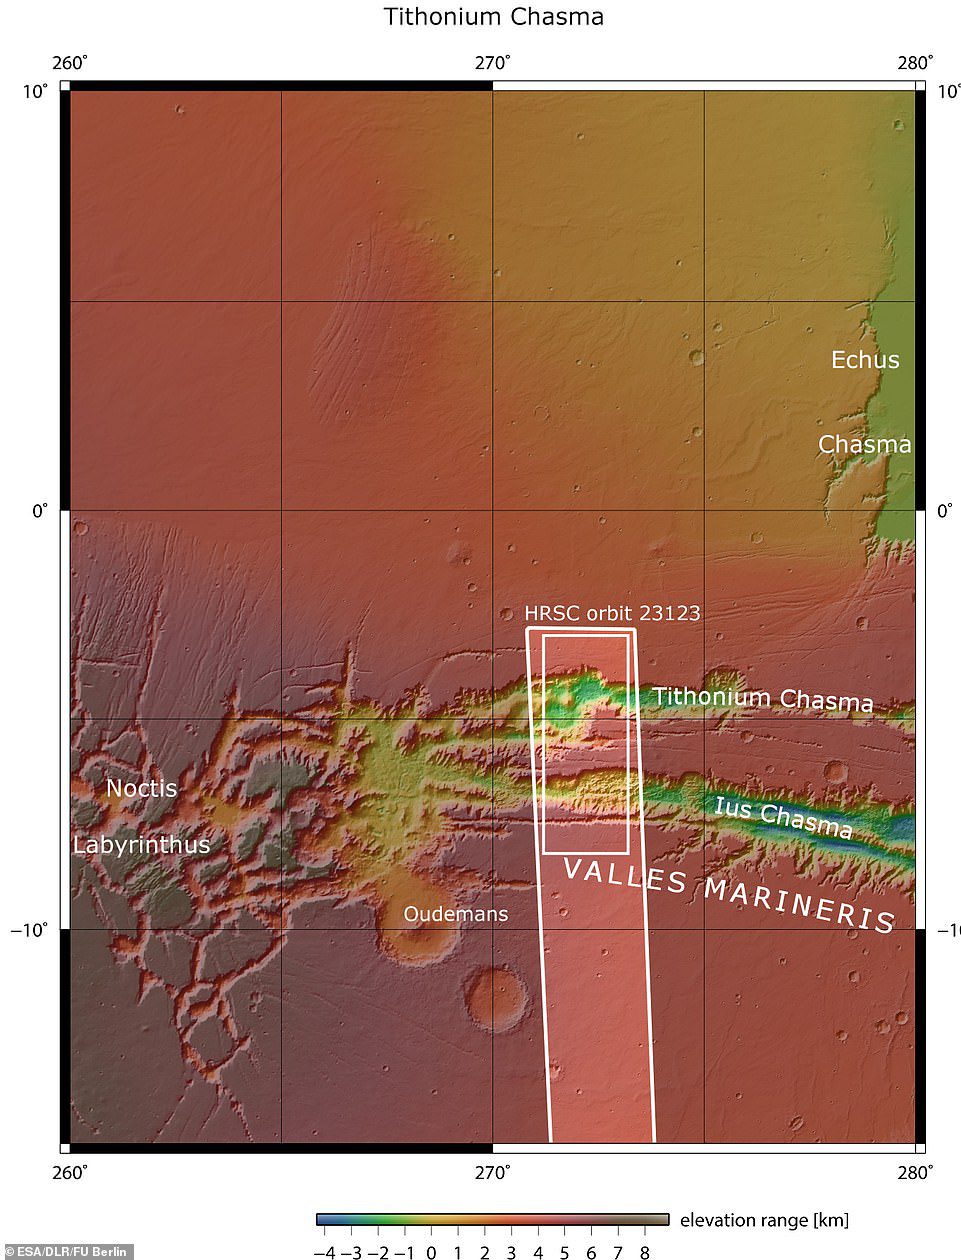 Lus ve Tithonium Chasmata yukarıda görülüyor.  Koyu beyaz kutuda belirtilen alan, Mars Express Yüksek Çözünürlüklü stereo kamera tarafından 21 Nisan 2022'de yörünge sırasında görüntülenen alanı gösterir.